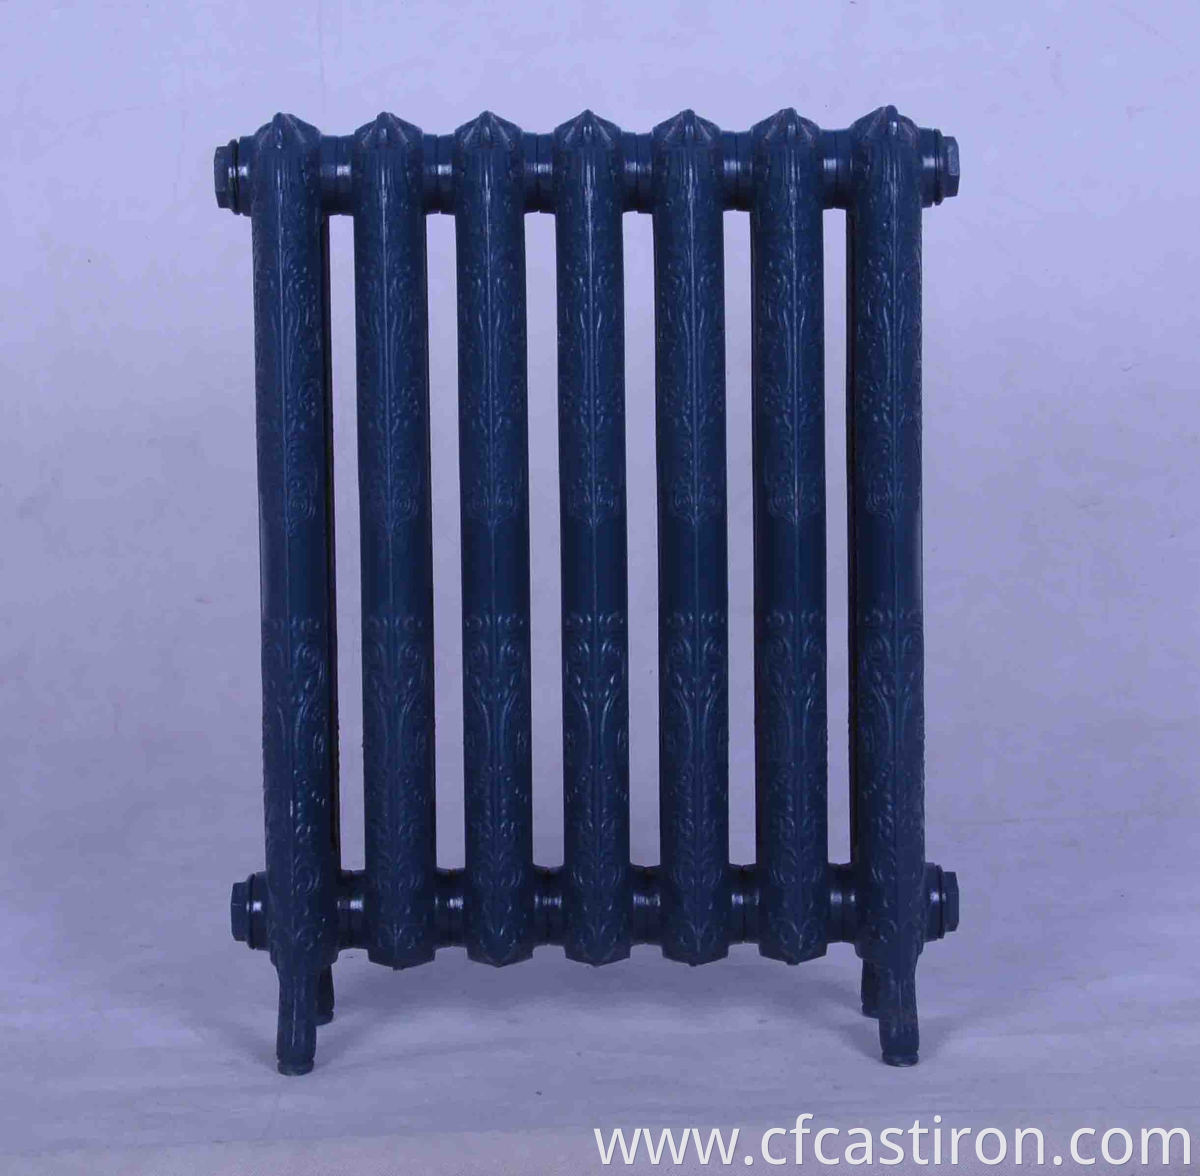 Queen radiators 760, series Queen cast iron radiators